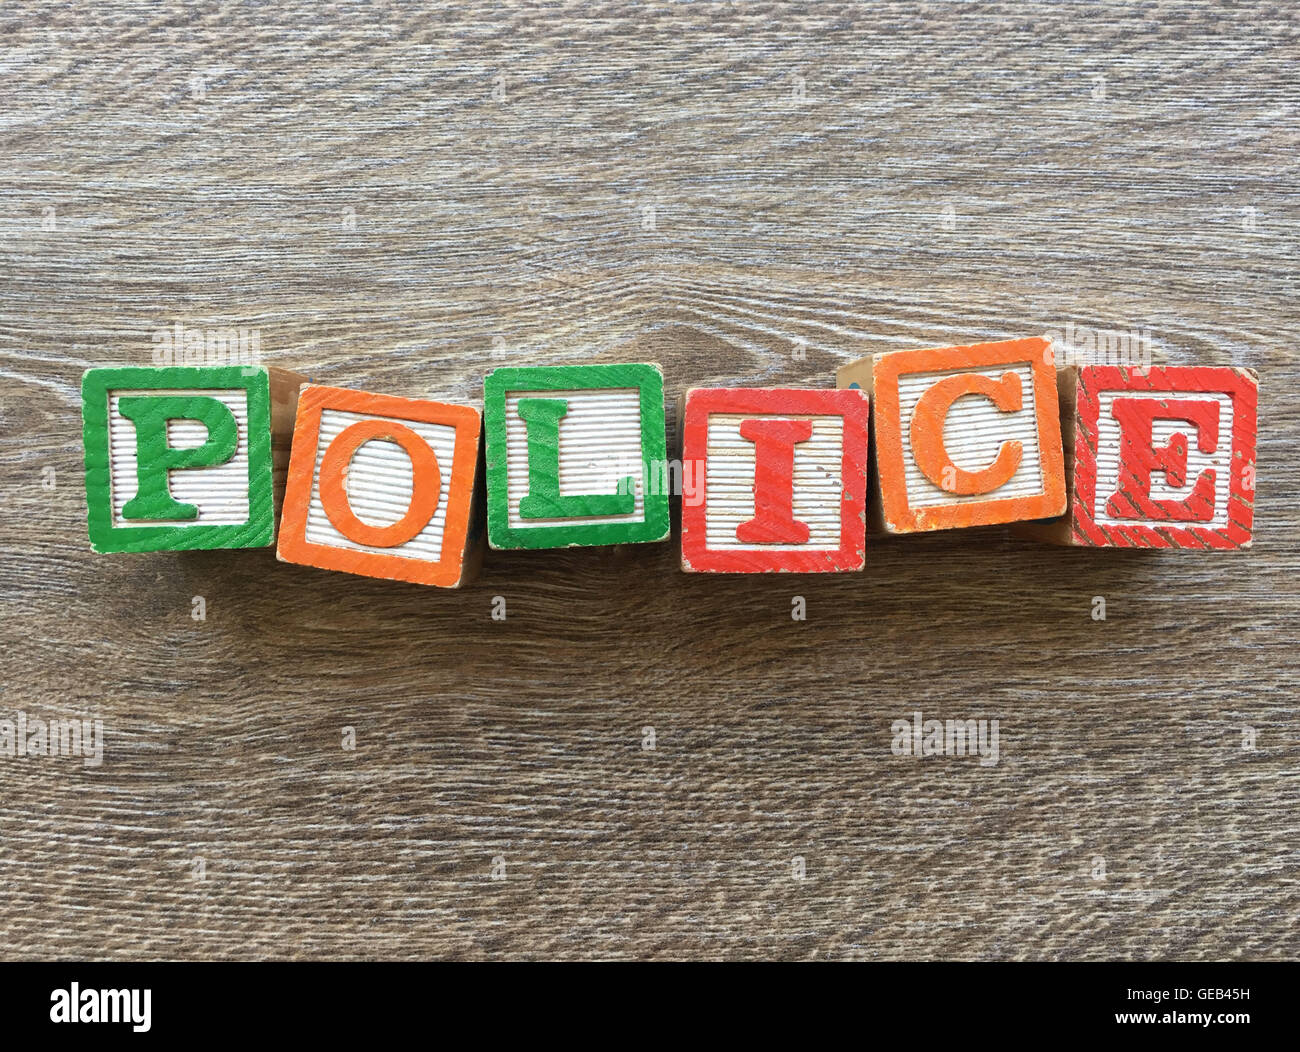 I blocchi di legno o cubetti di legno giocattoli con alfabeto lettere su di essi combinati insieme per creare la parola Polizia Foto Stock